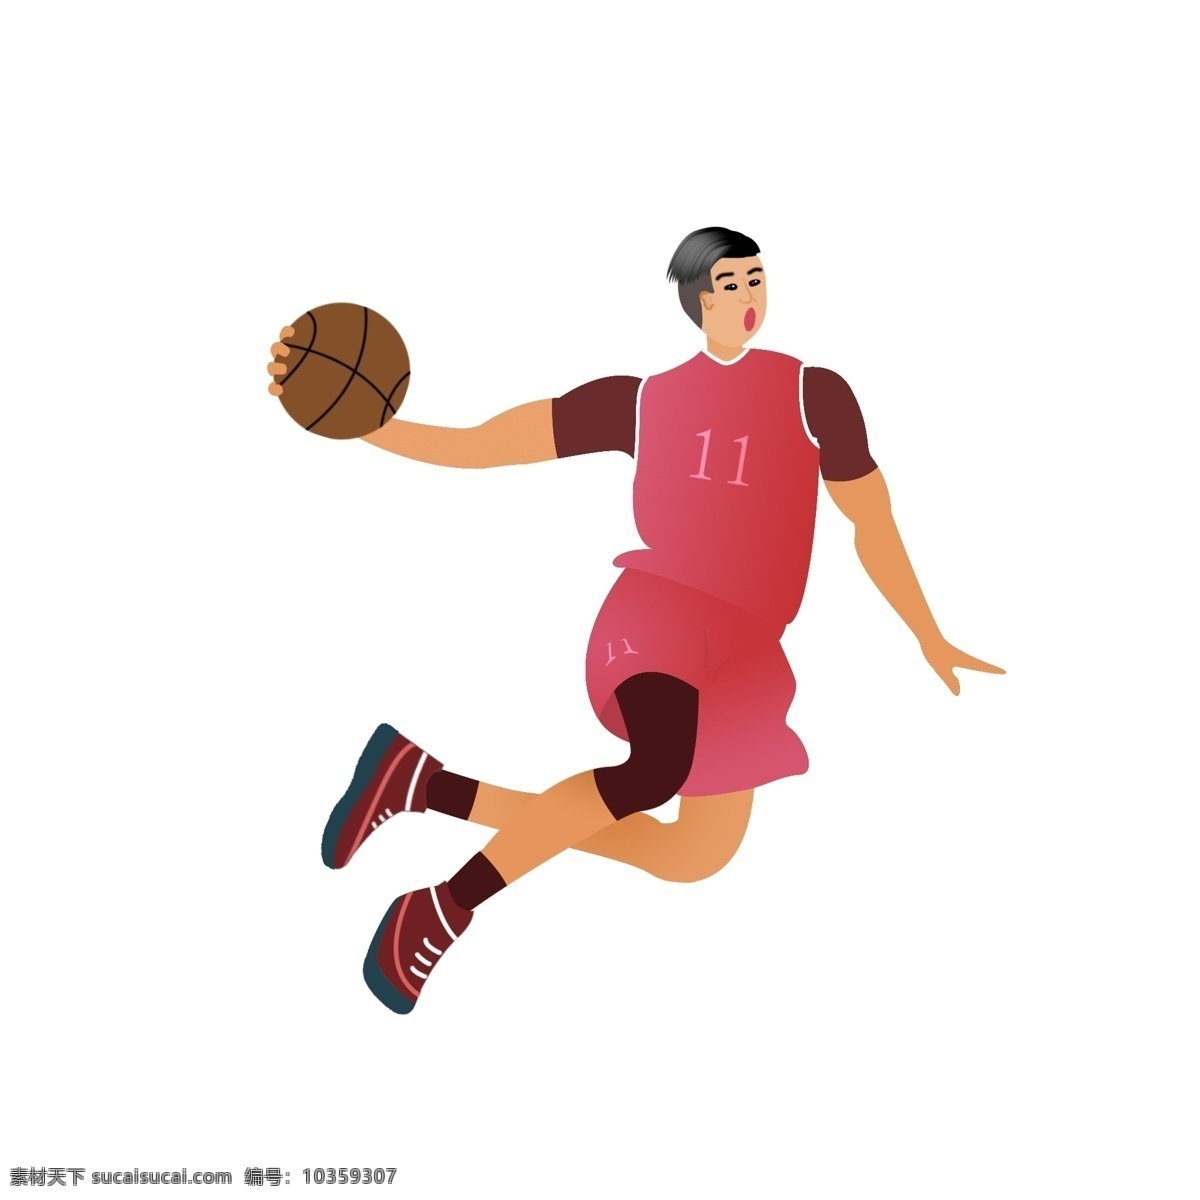 国际 篮球 日 卡通 扣篮 球员 篮球比赛 卡通人物 体育运动